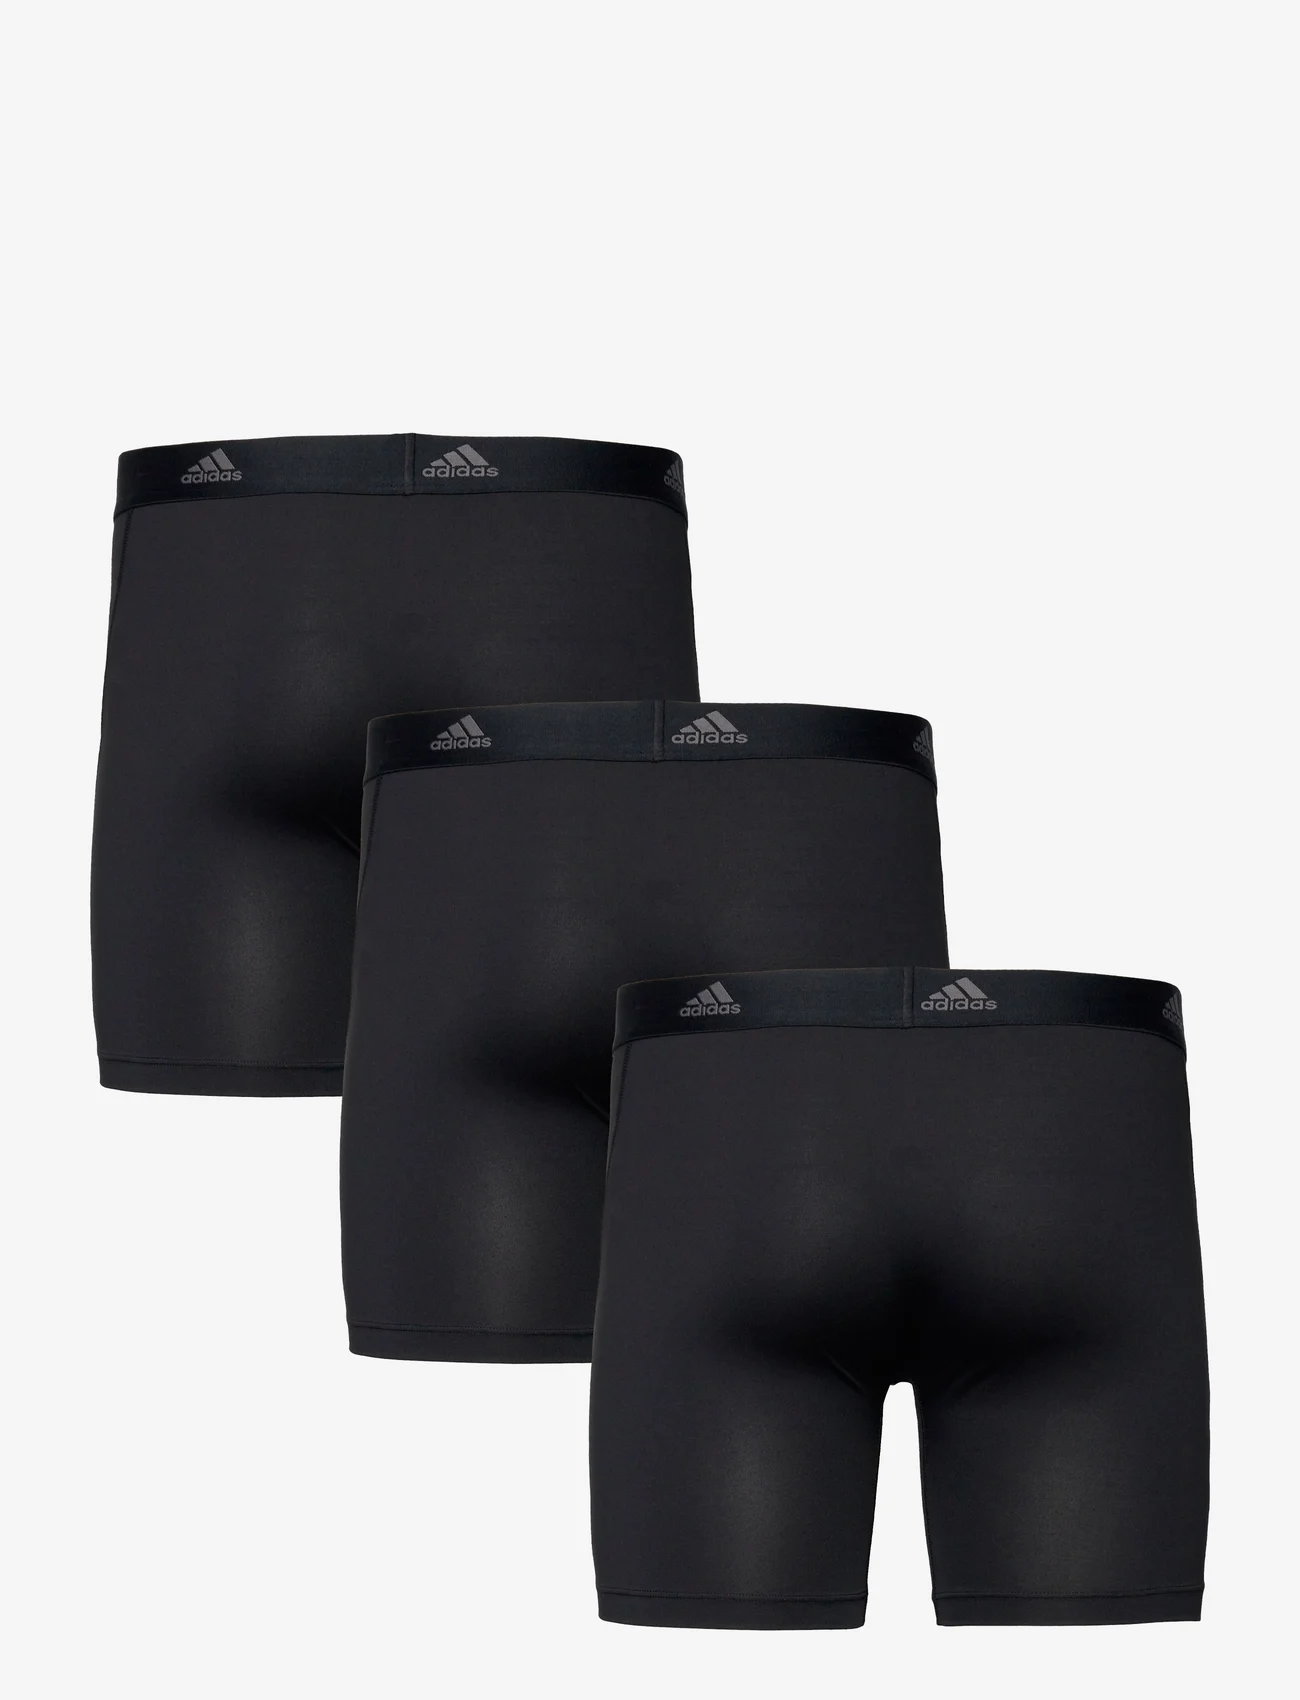 adidas Underwear - Shorts - boxerkalsonger - black - 1